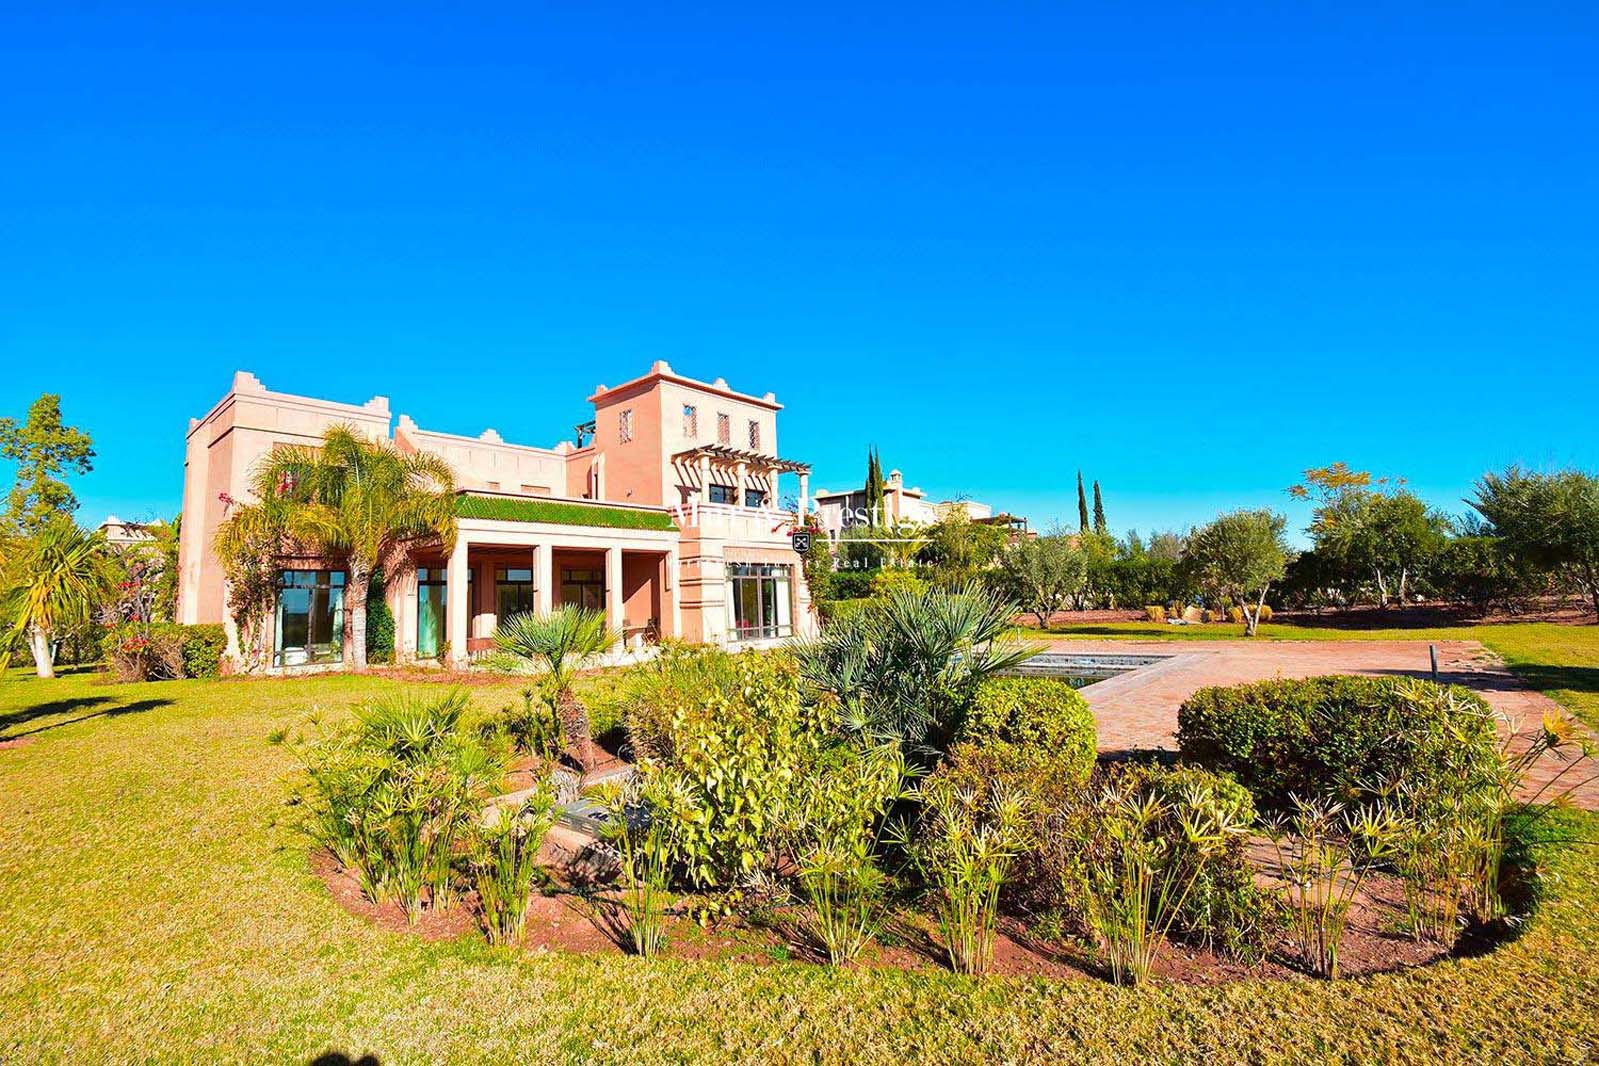 Vente villa en 1ère ligne de golf à Marrakech